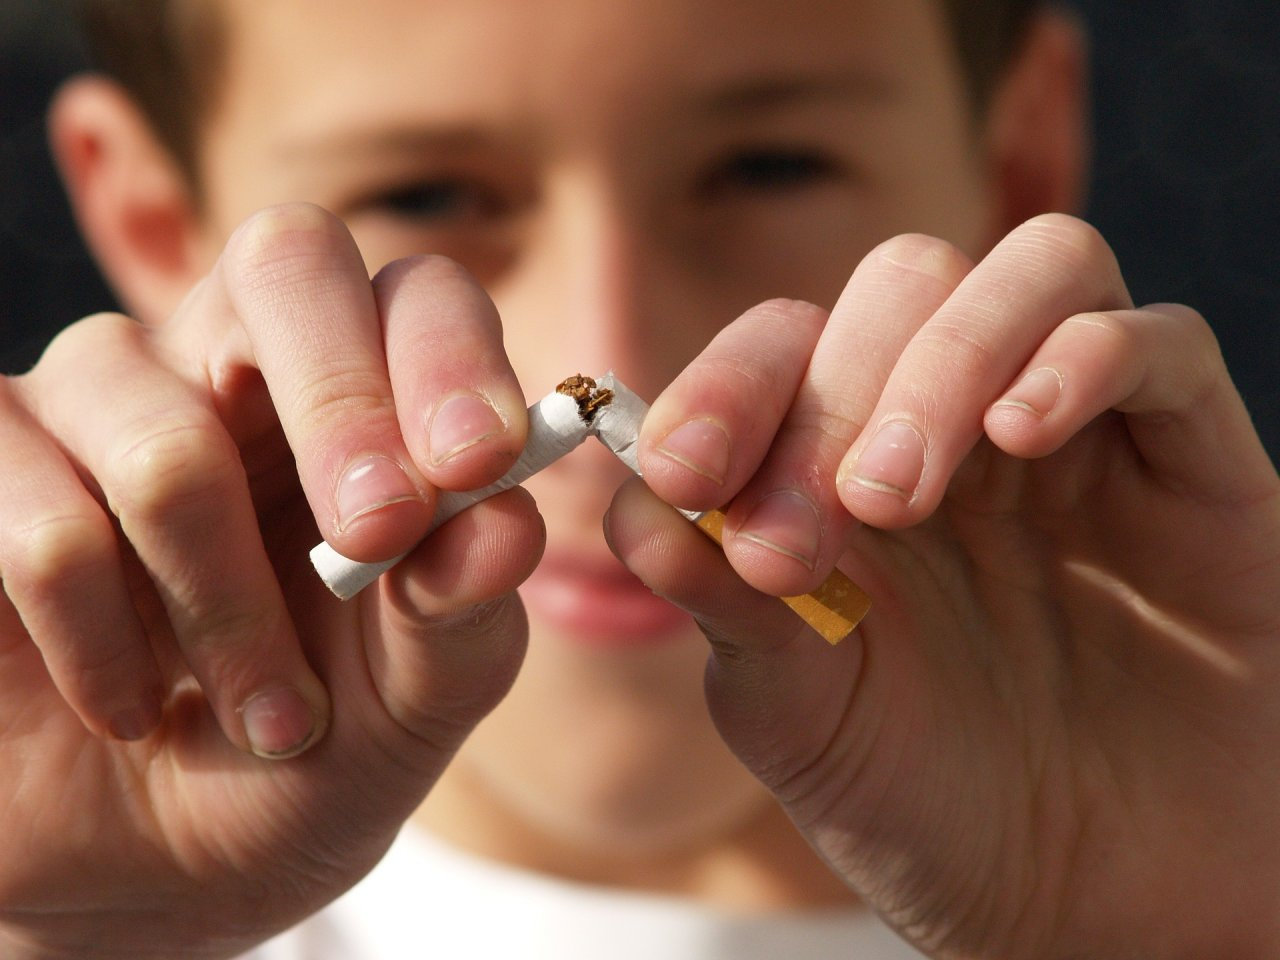 В Кирове почти в 4 раза увеличили штрафы за продажу табака несовершеннолетним